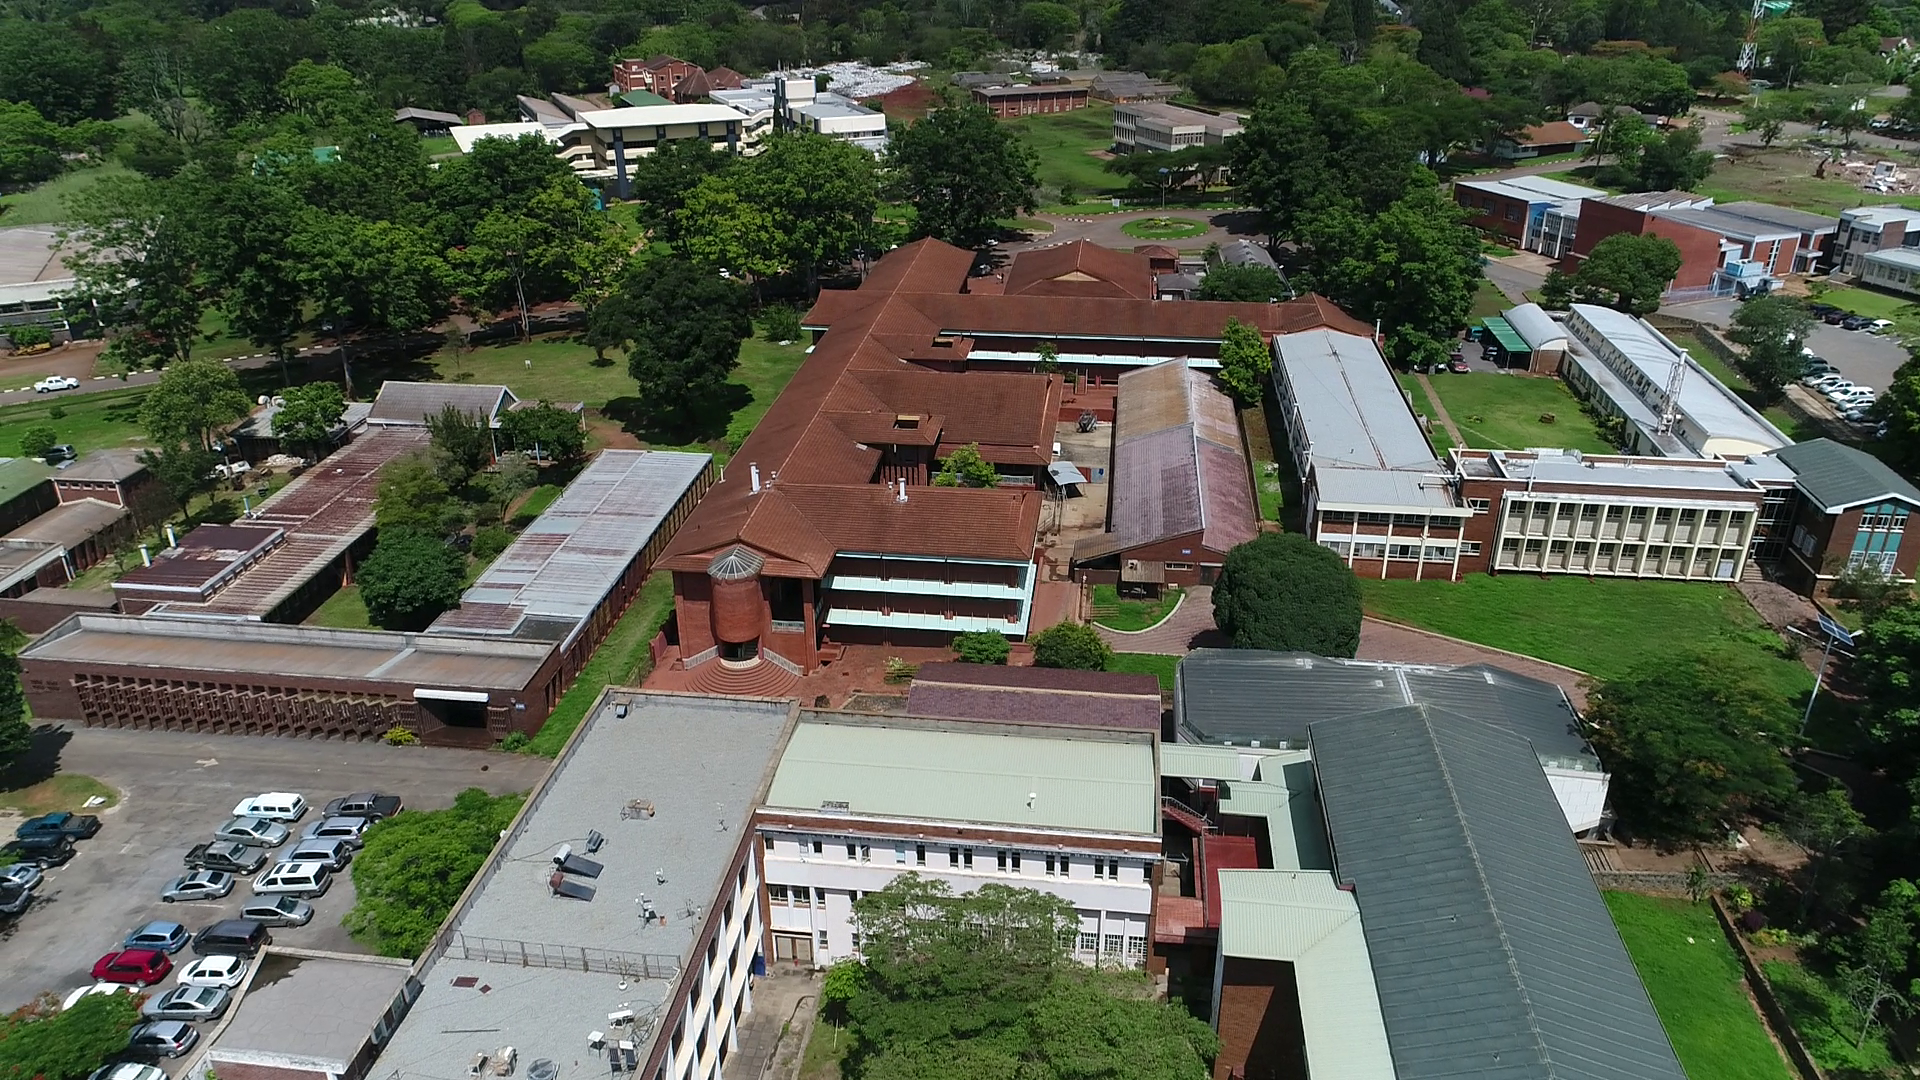 UZ | University of Zimbabwe